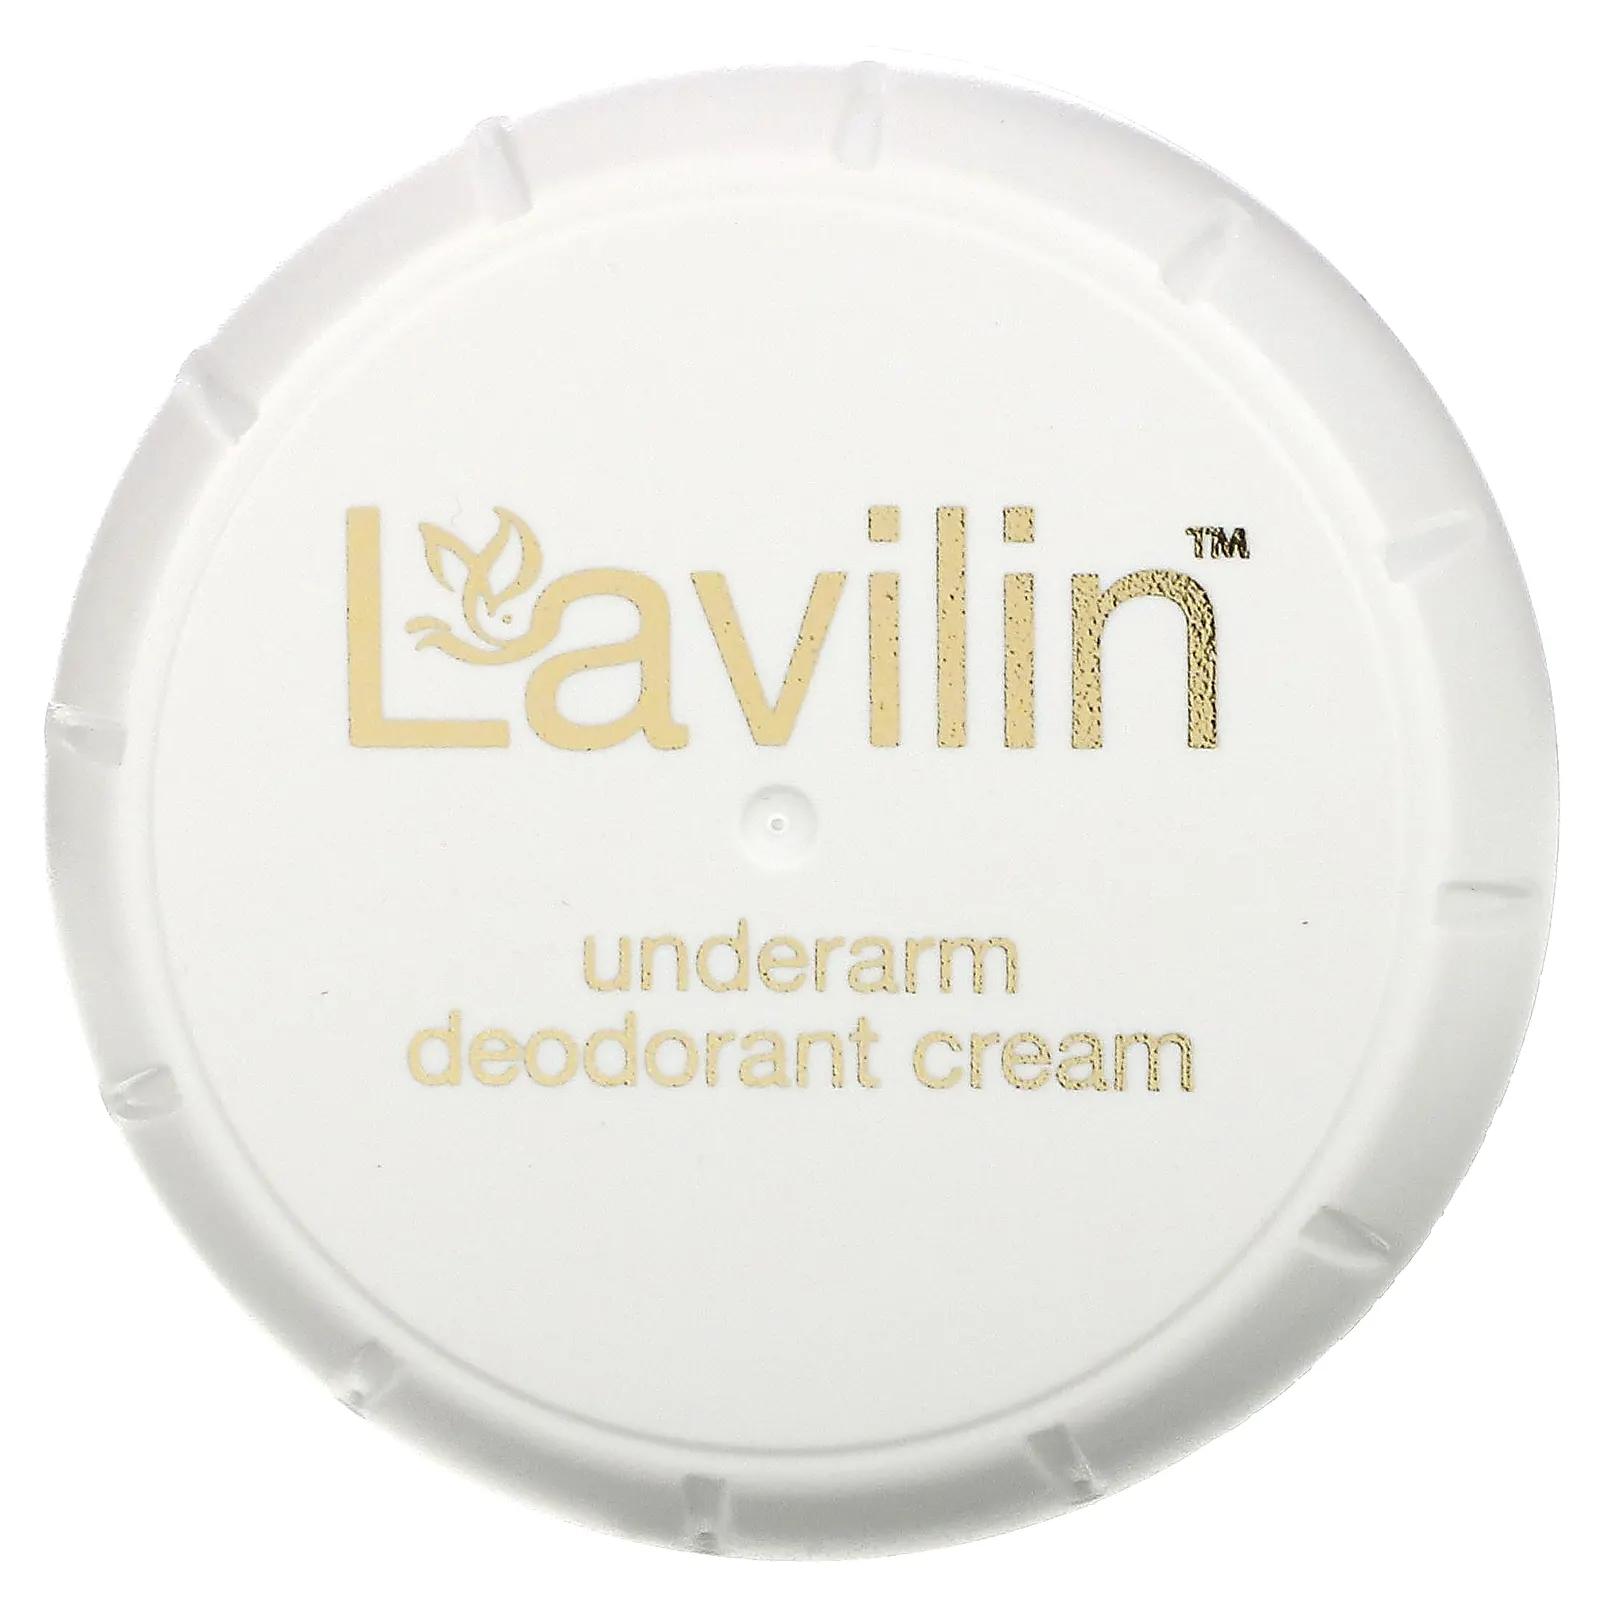 Lavilin Крем-дезодорант для подмышек 12,5 г крем дезодорант lavilin для подмышек